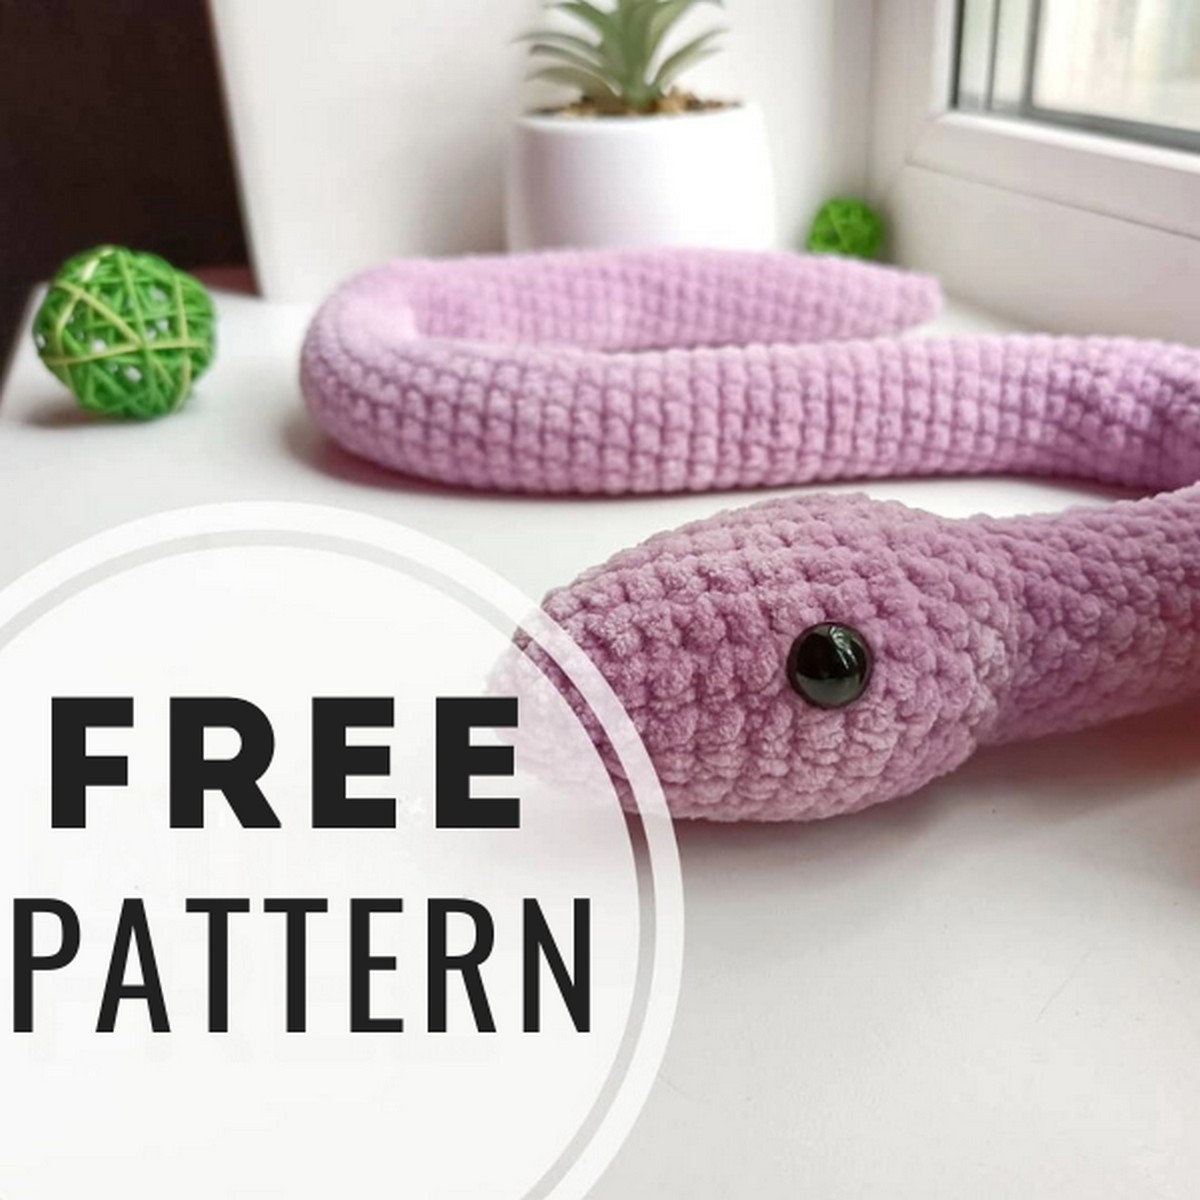 Free Crochet Snake Pattern